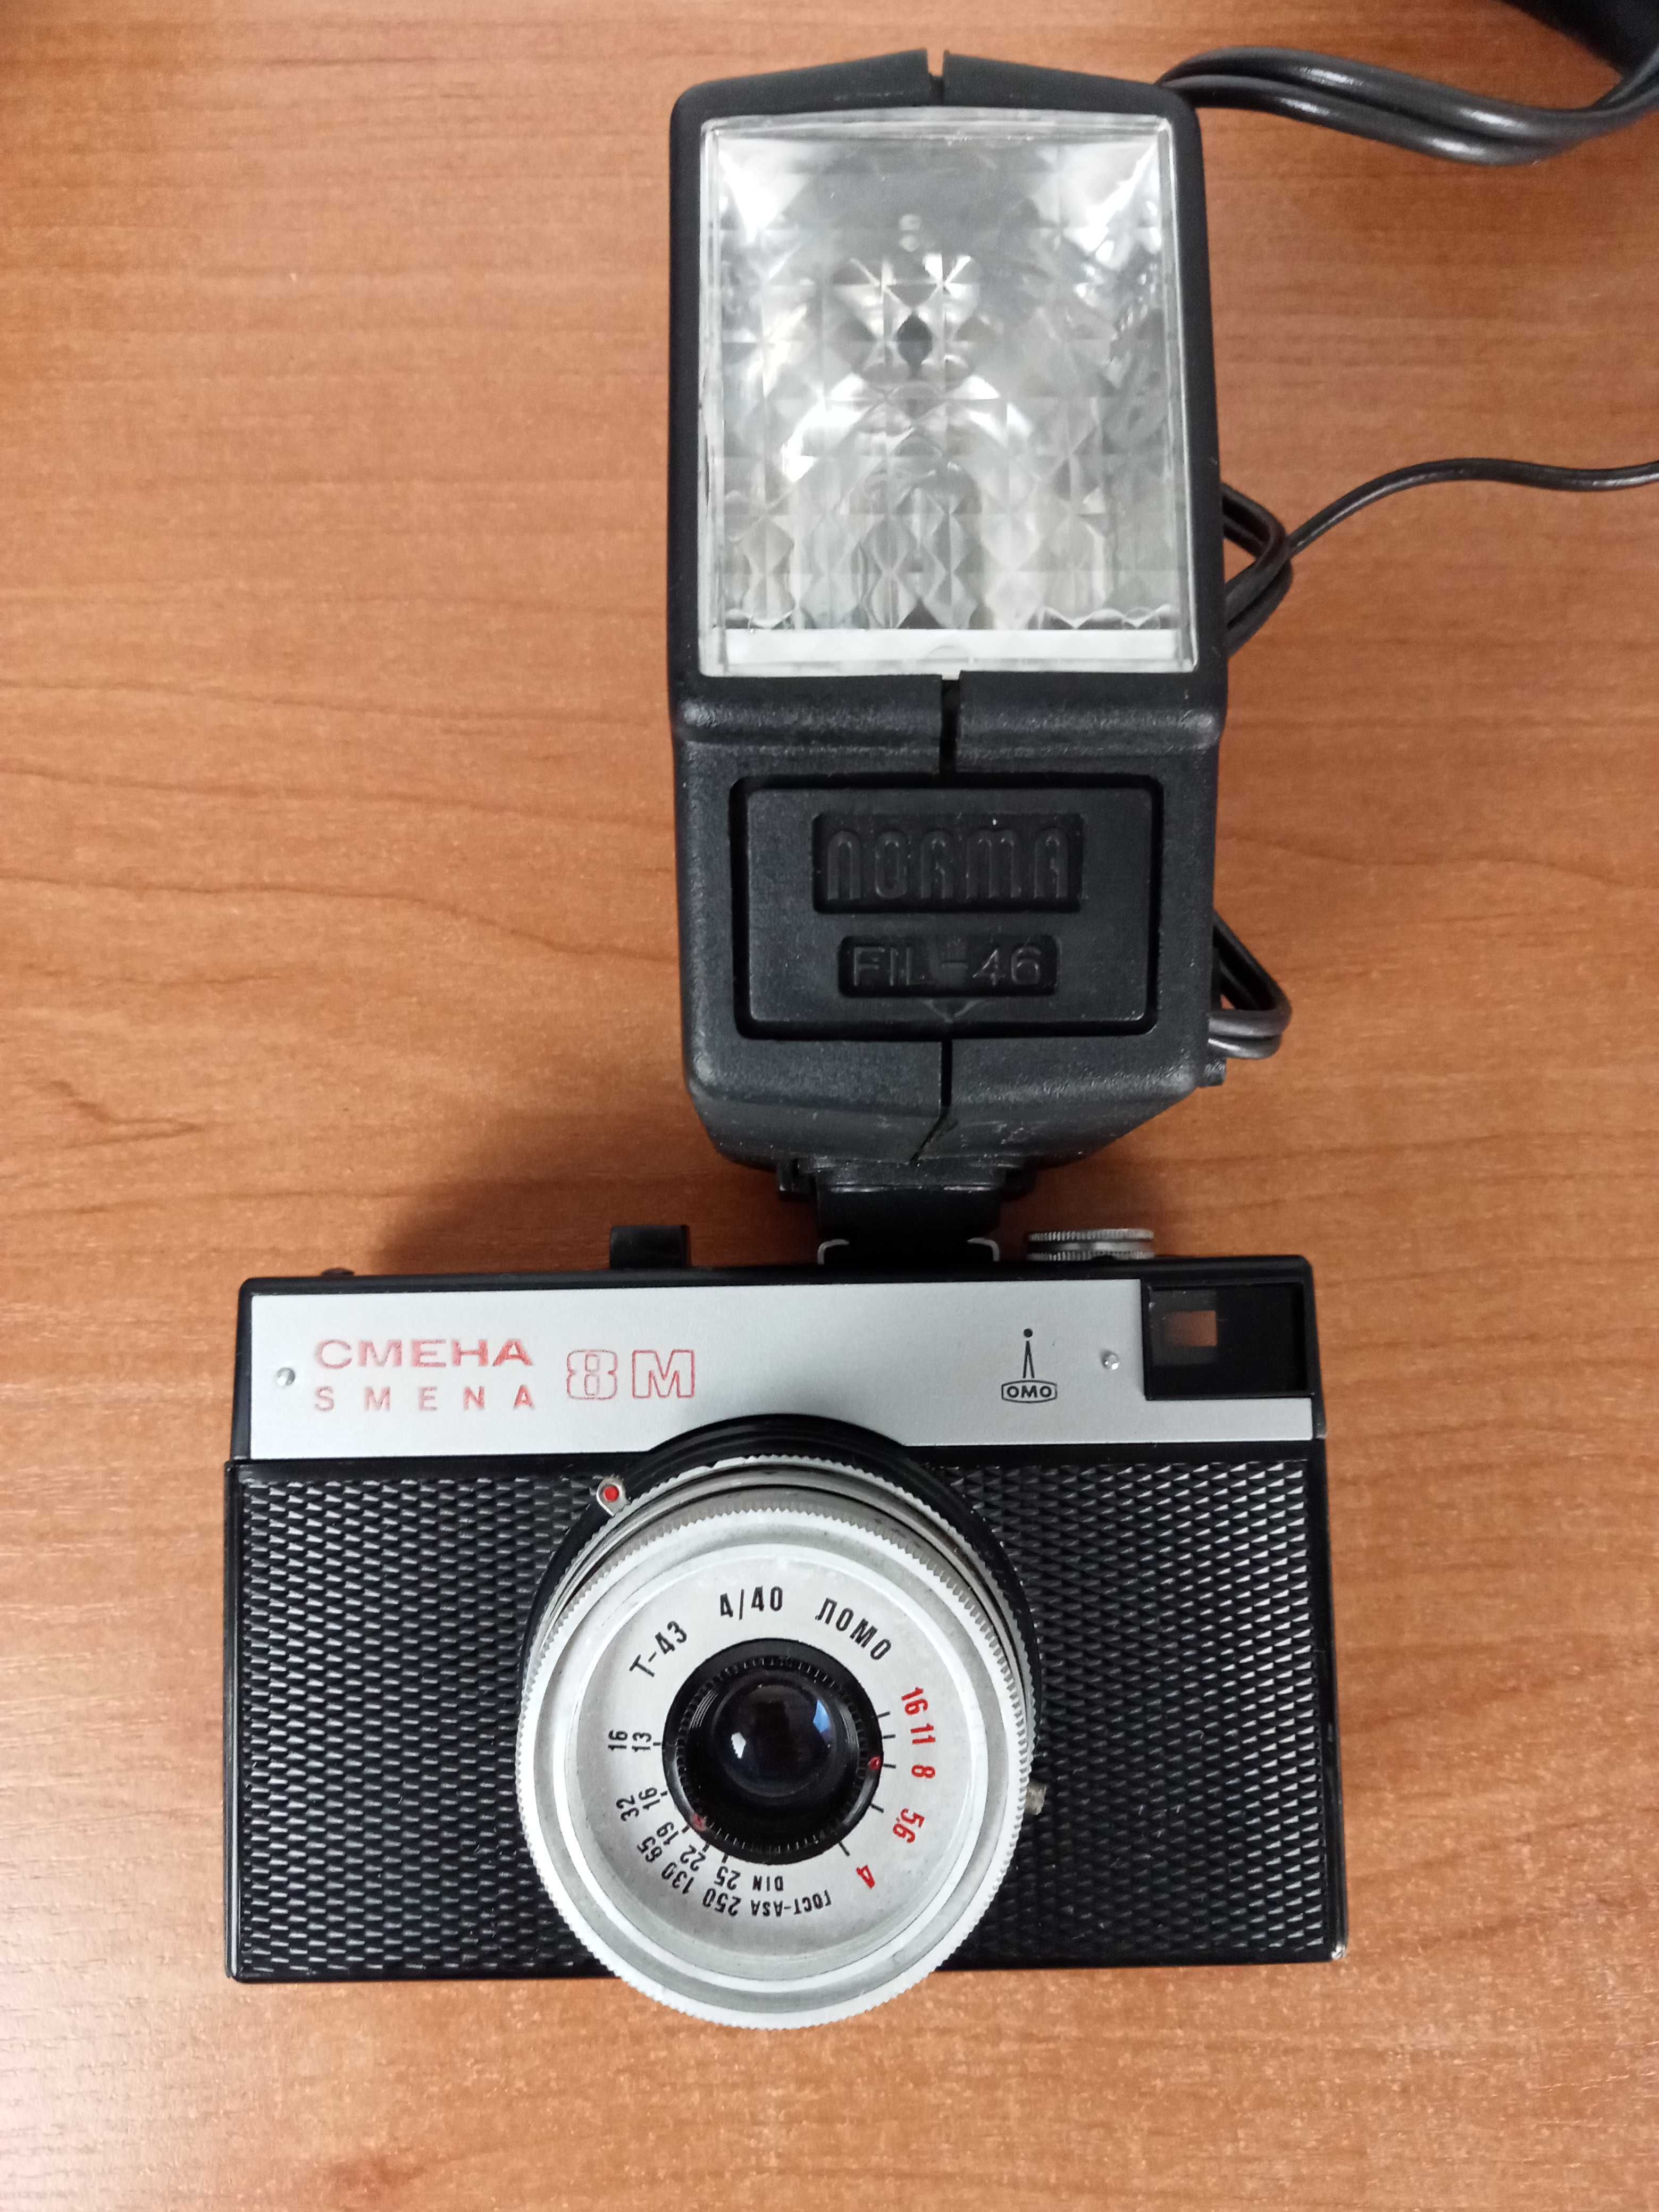 aparat fotograficzny SMENA 8M analogowy